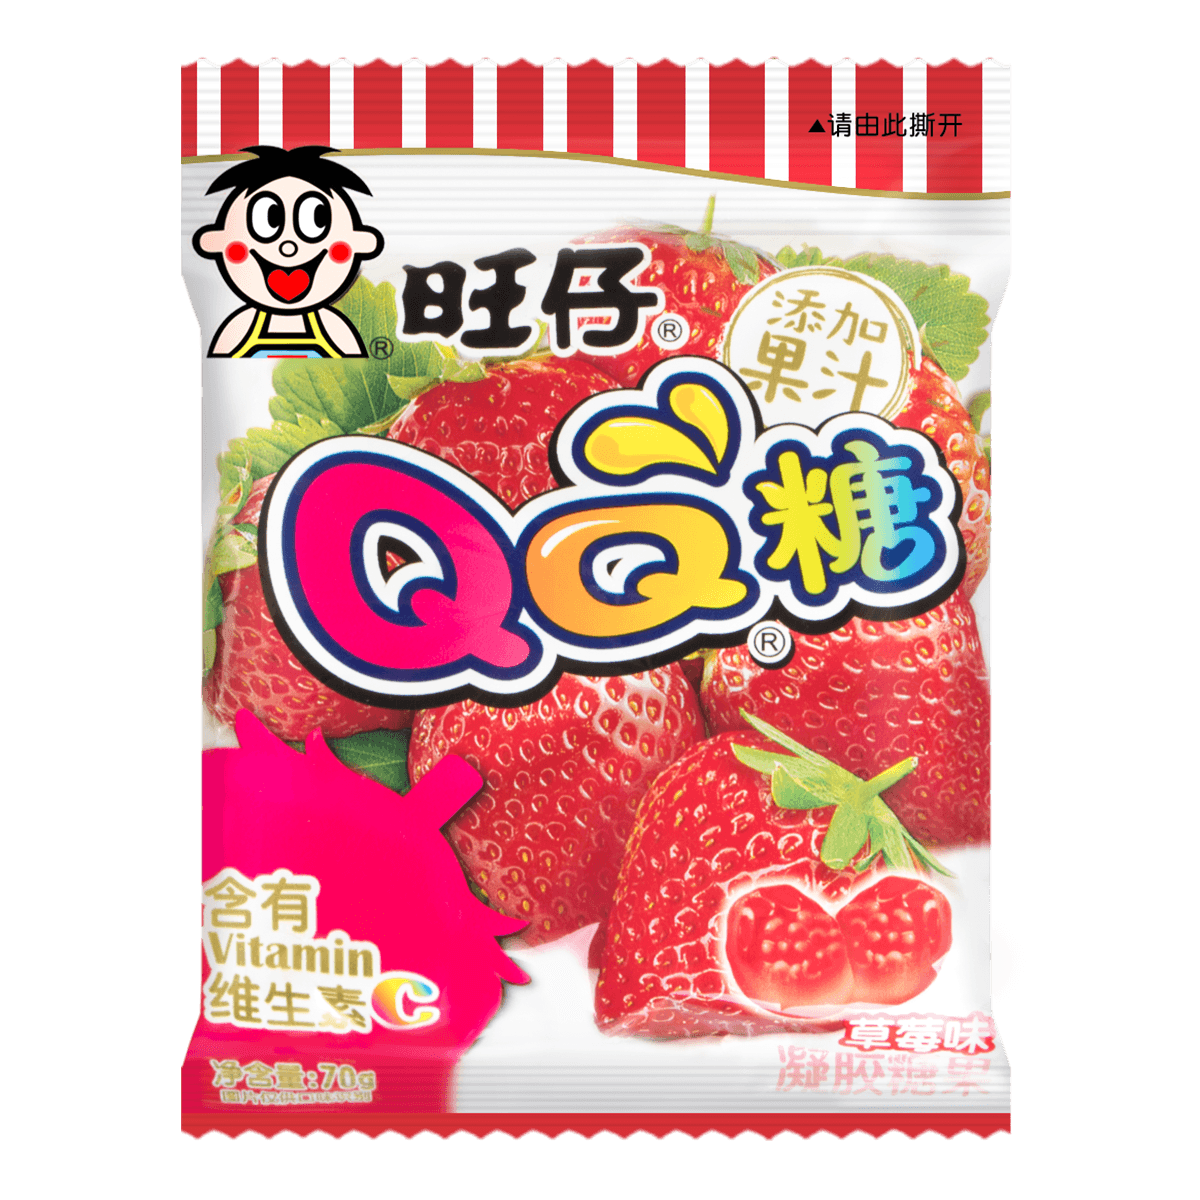 台湾旺旺旺仔qq糖混合胶型凝胶糖果草莓味70g怎么样